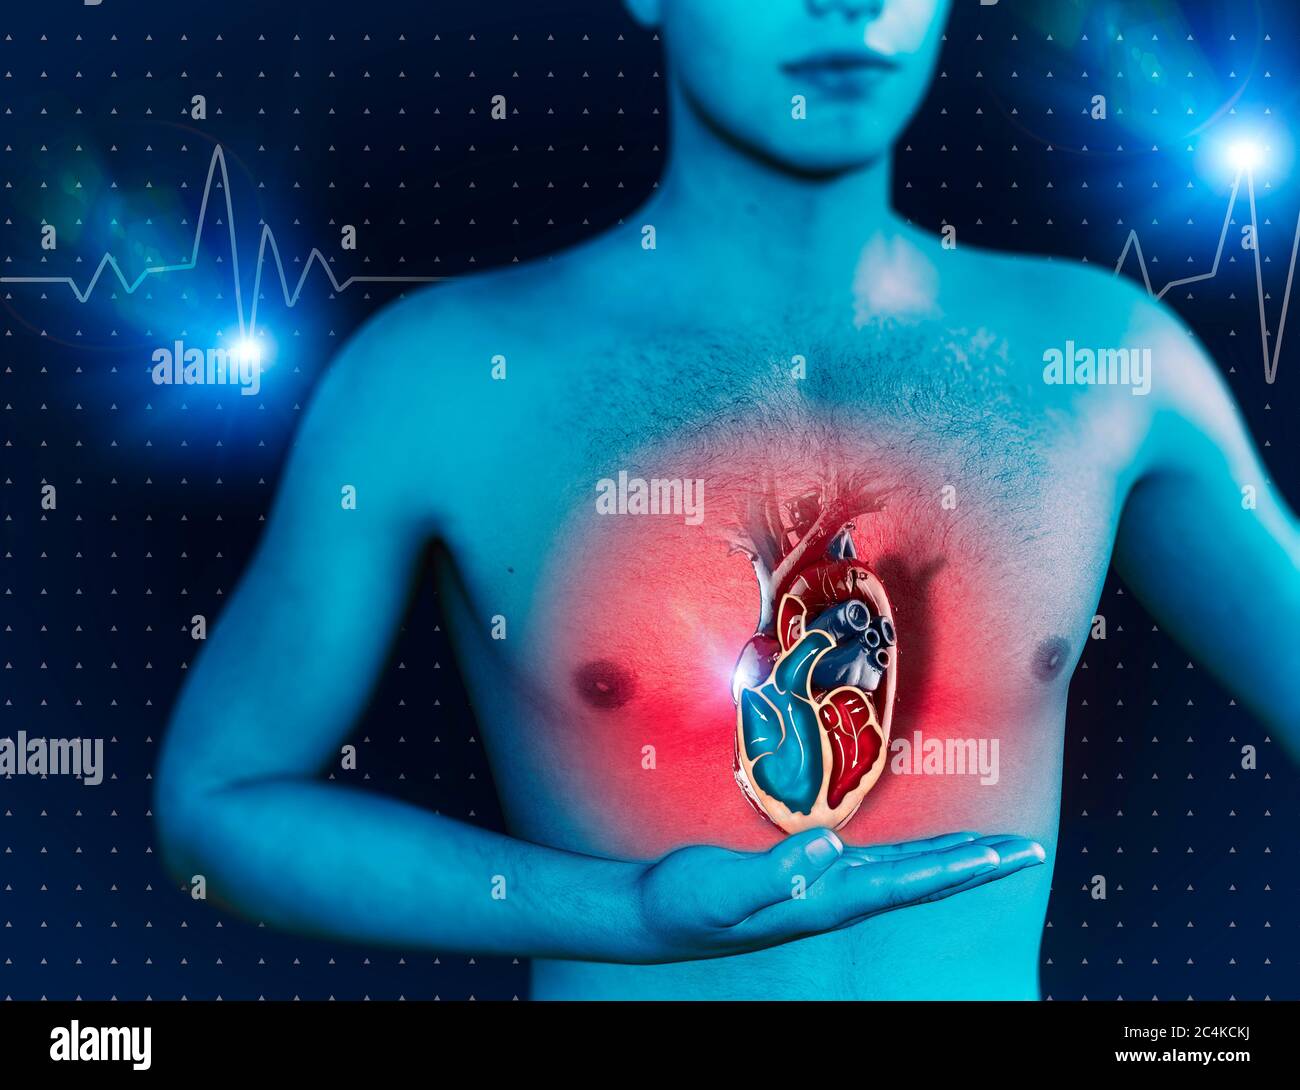 Mensch und Herz, menschliche Anatomie, Herzschlag und Angriff. Kardiologische Untersuchung, kardialer Betrieb. 3d-Rendering Stockfoto